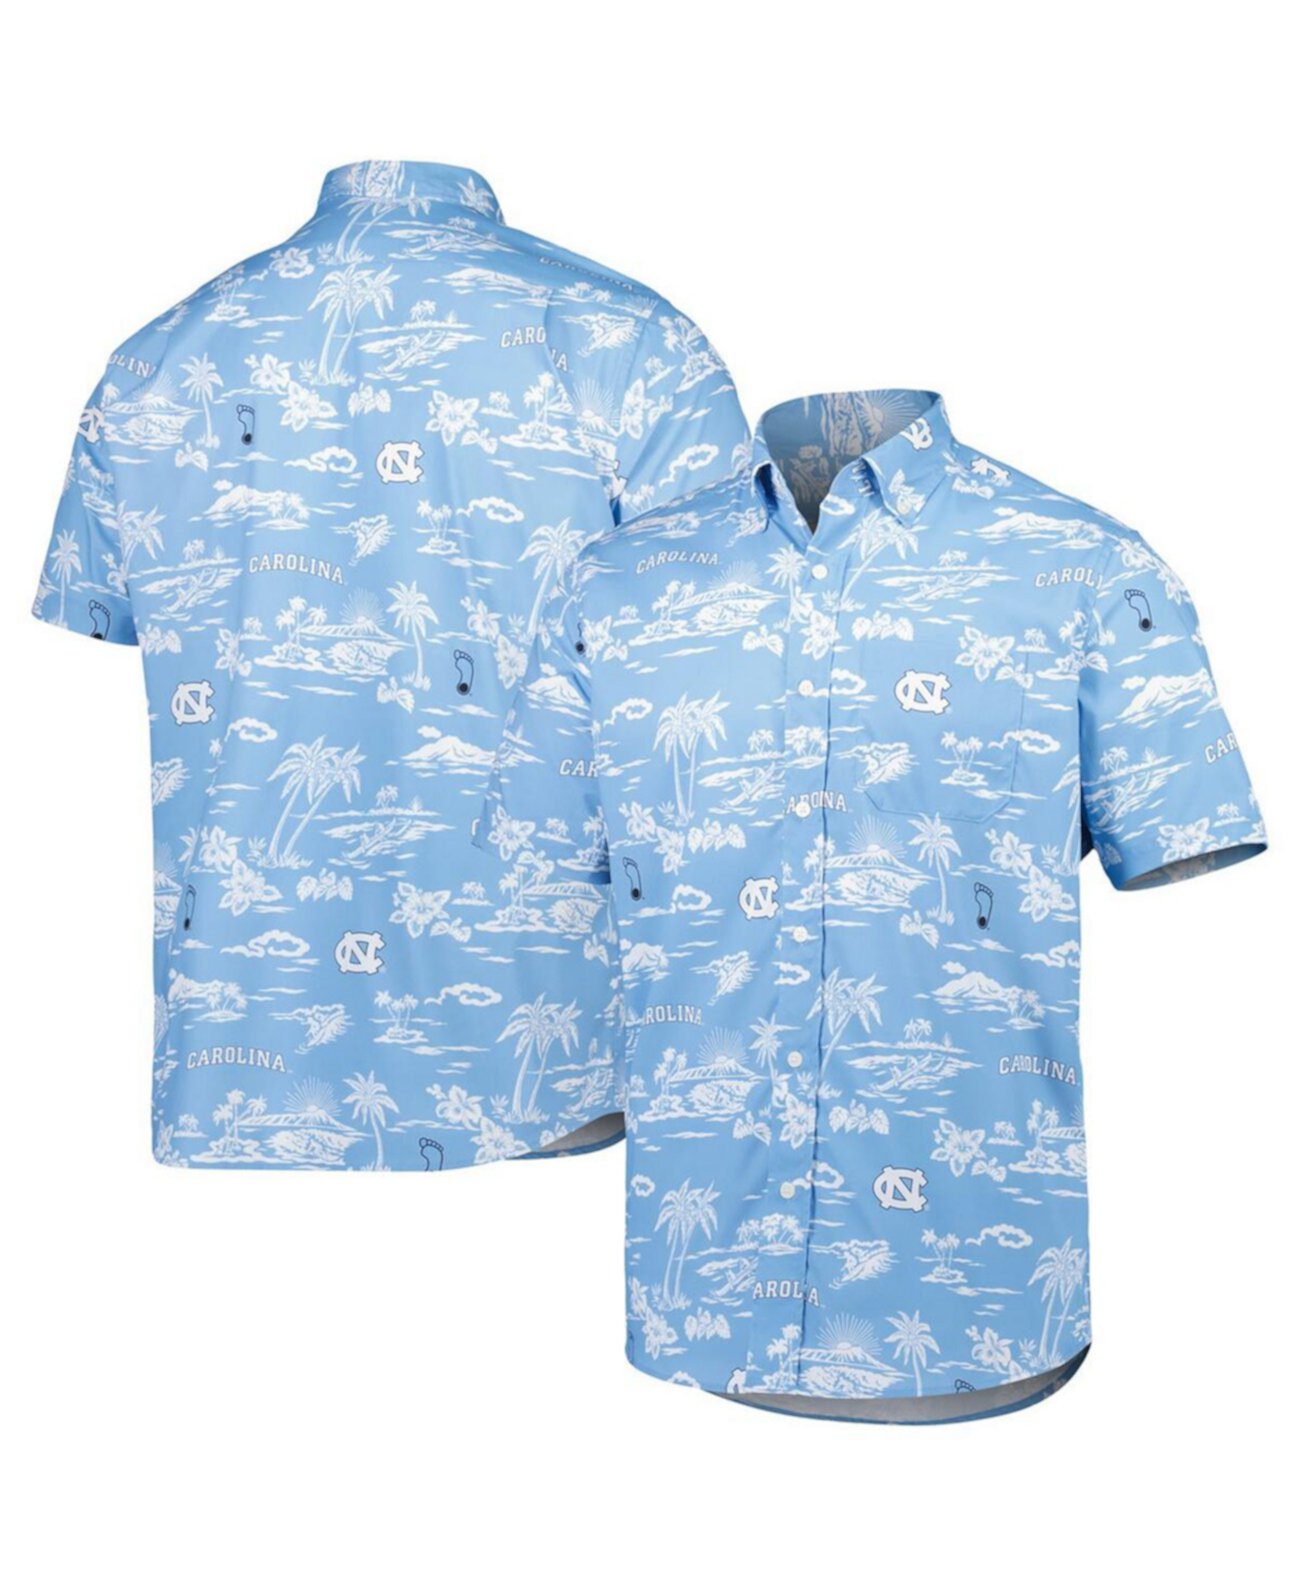 Норт блю. Гавайская рубашка Reyn Spooner.